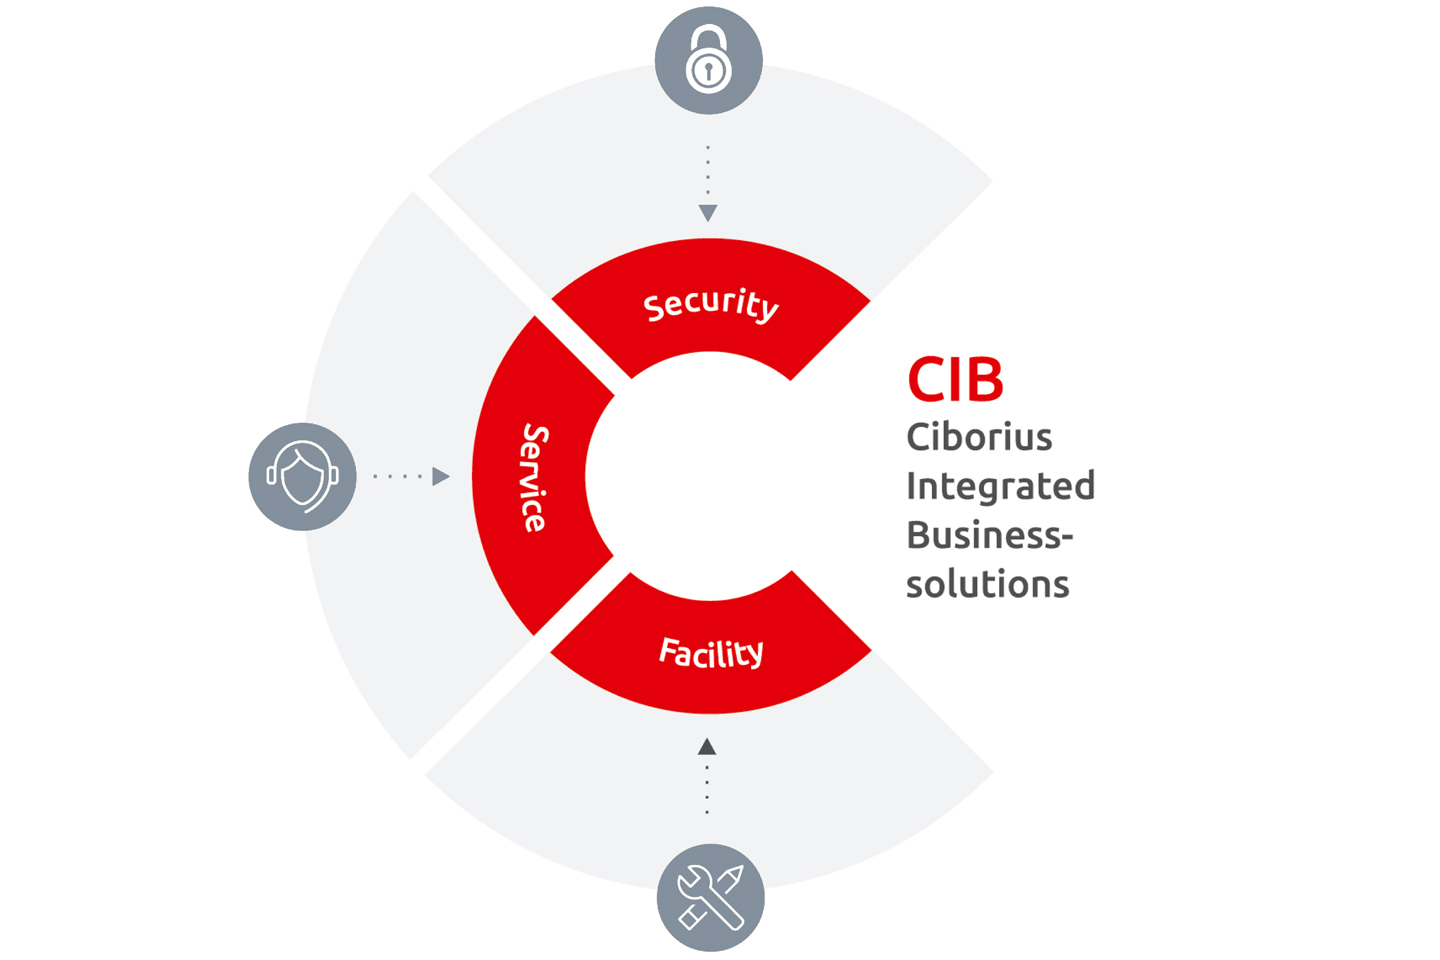 CIBORIUS Integrated Business